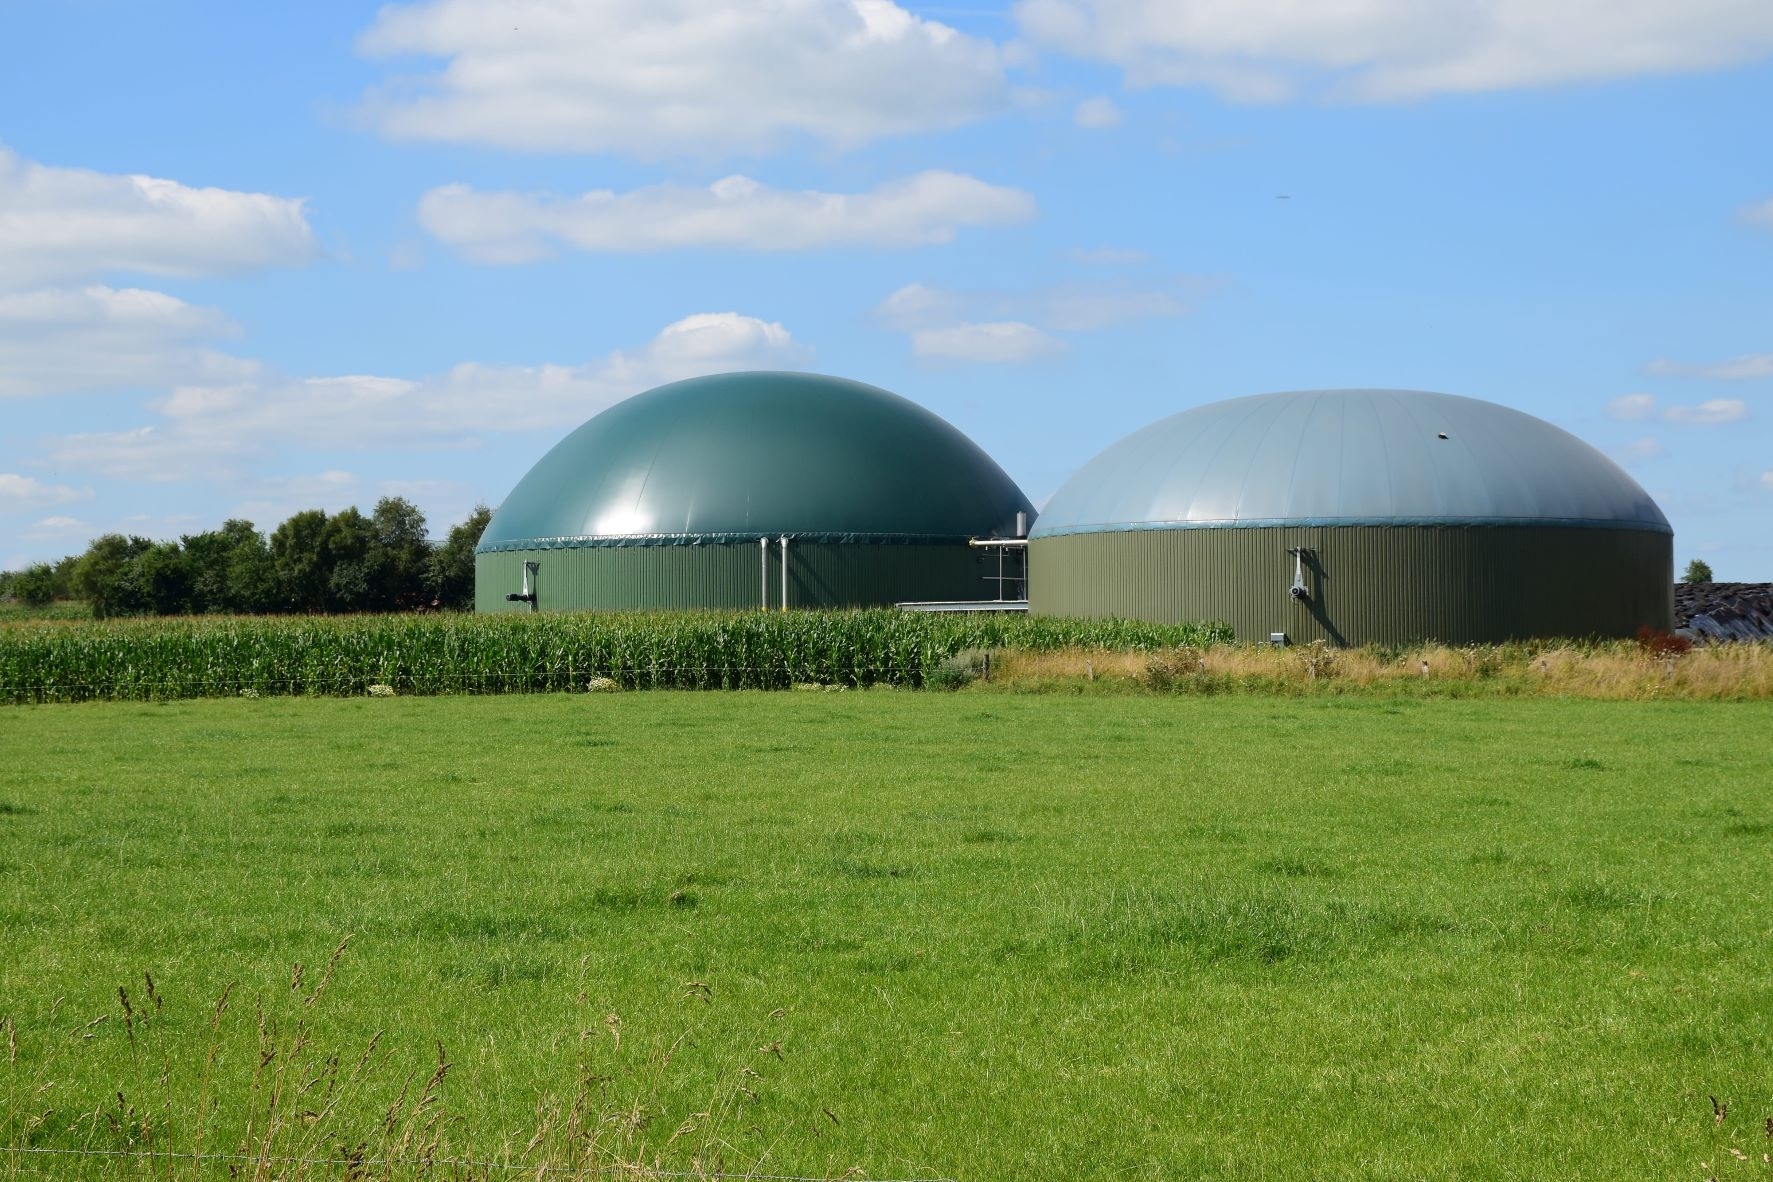 Didžiausias Baltijos šalių biodujų portfelis modernizuojamas į biometano jėgaines